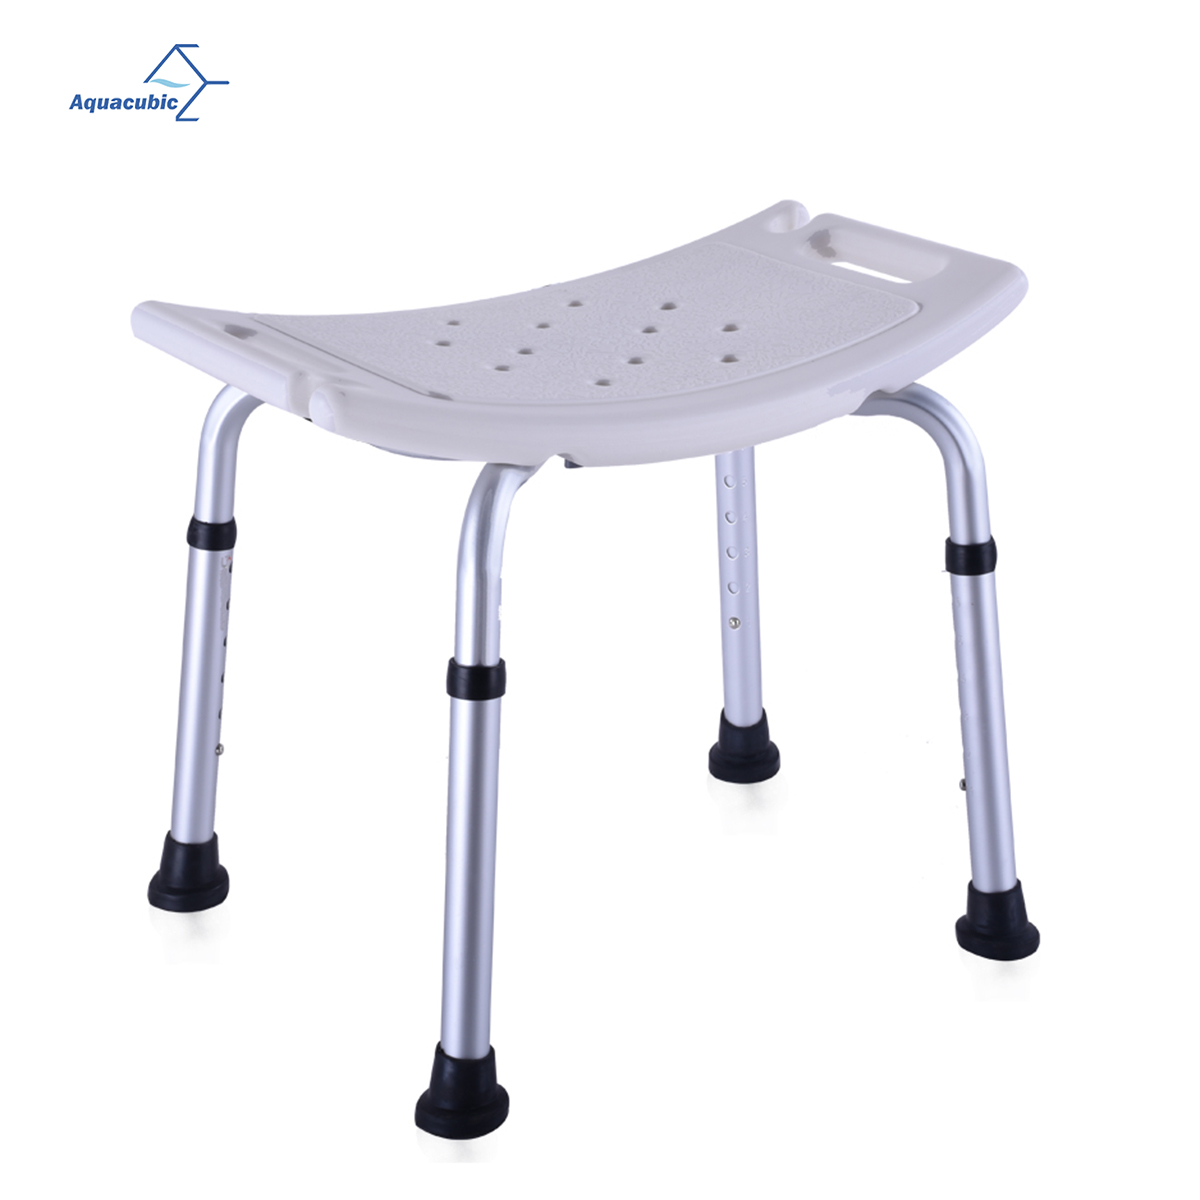 Support de chaise de douche réglable en hauteur 300 LBS chaise de salle de bain pour personnes âgées et handicapées chaise de bain antidérapante tabouret de douche